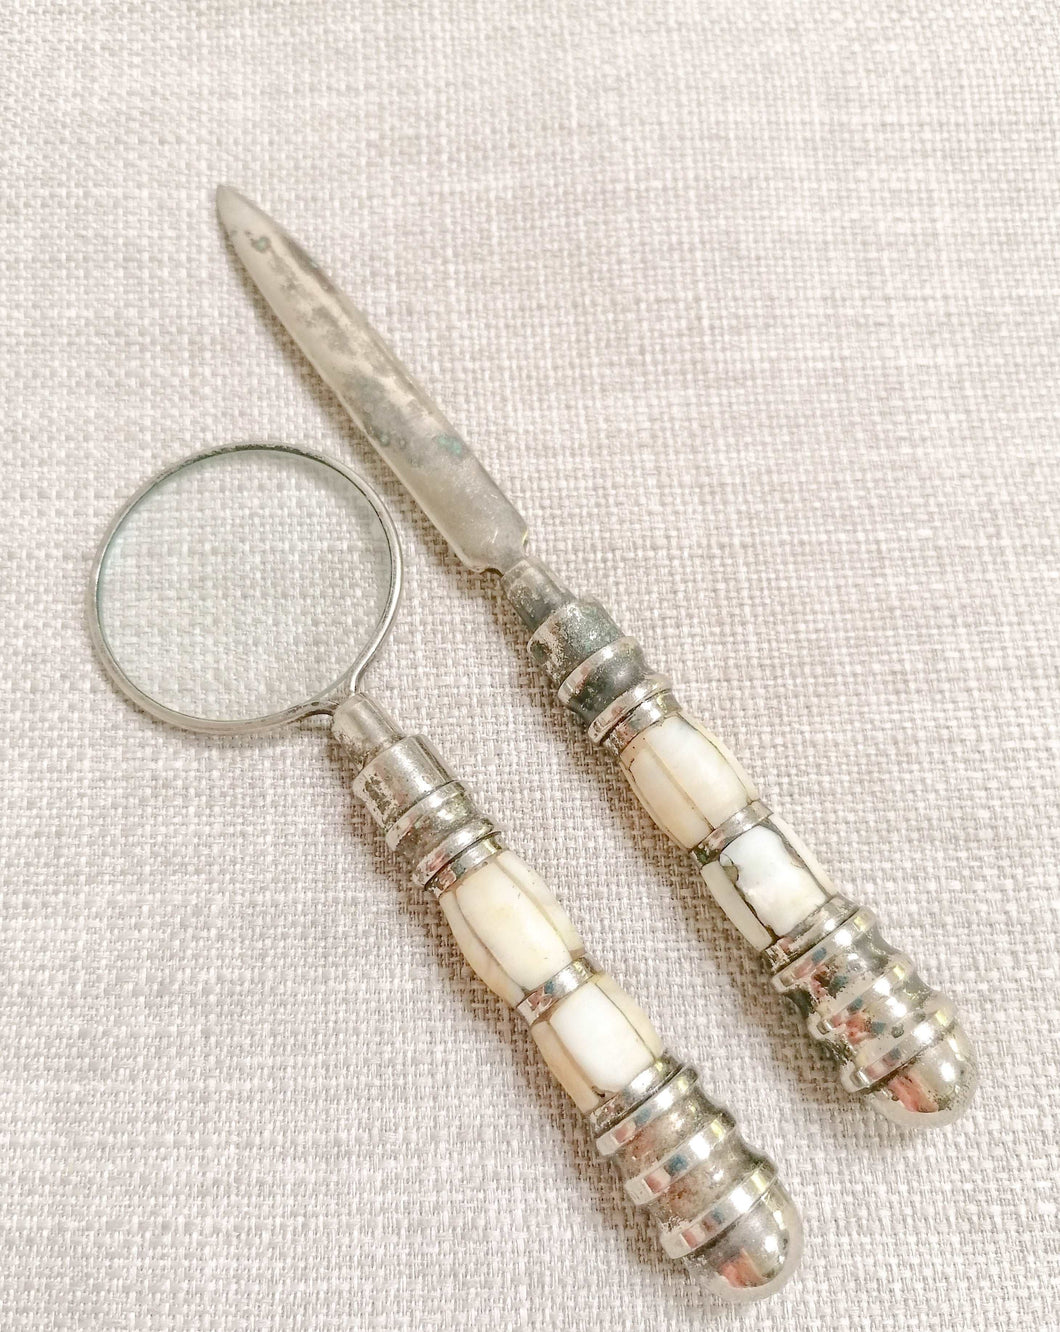 Letter opener & Magnifying glass